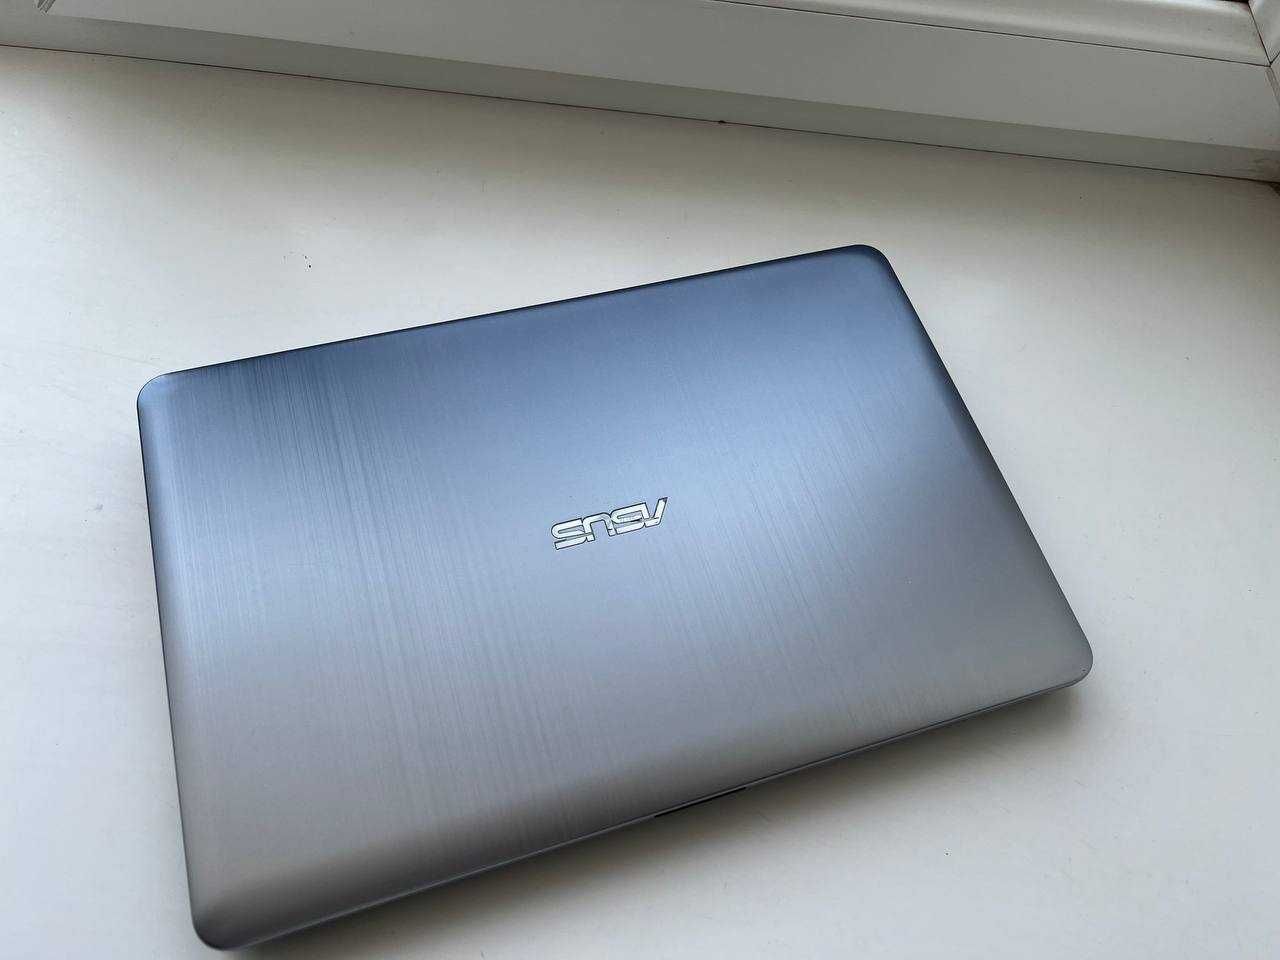 домашний ноутбук в идеальном состоянии Asus для офиса и дома